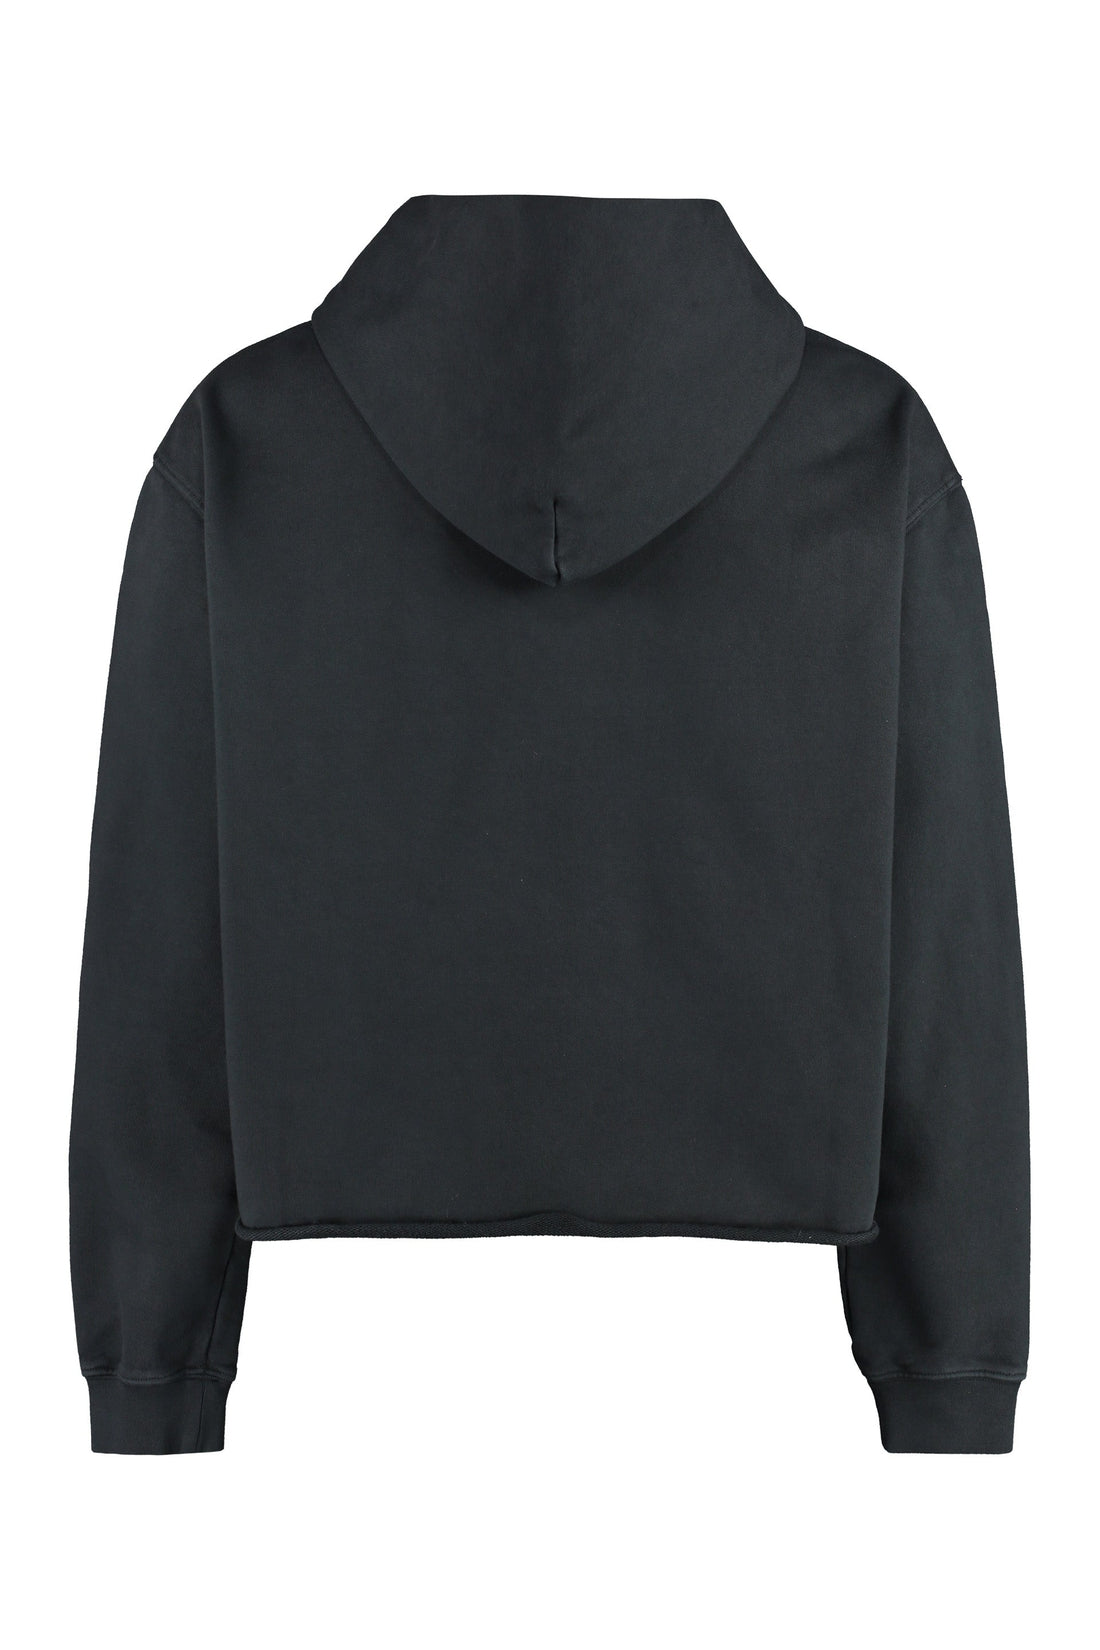 Maison Margiela-OUTLET-SALE-Hooded sweatshirt-ARCHIVIST